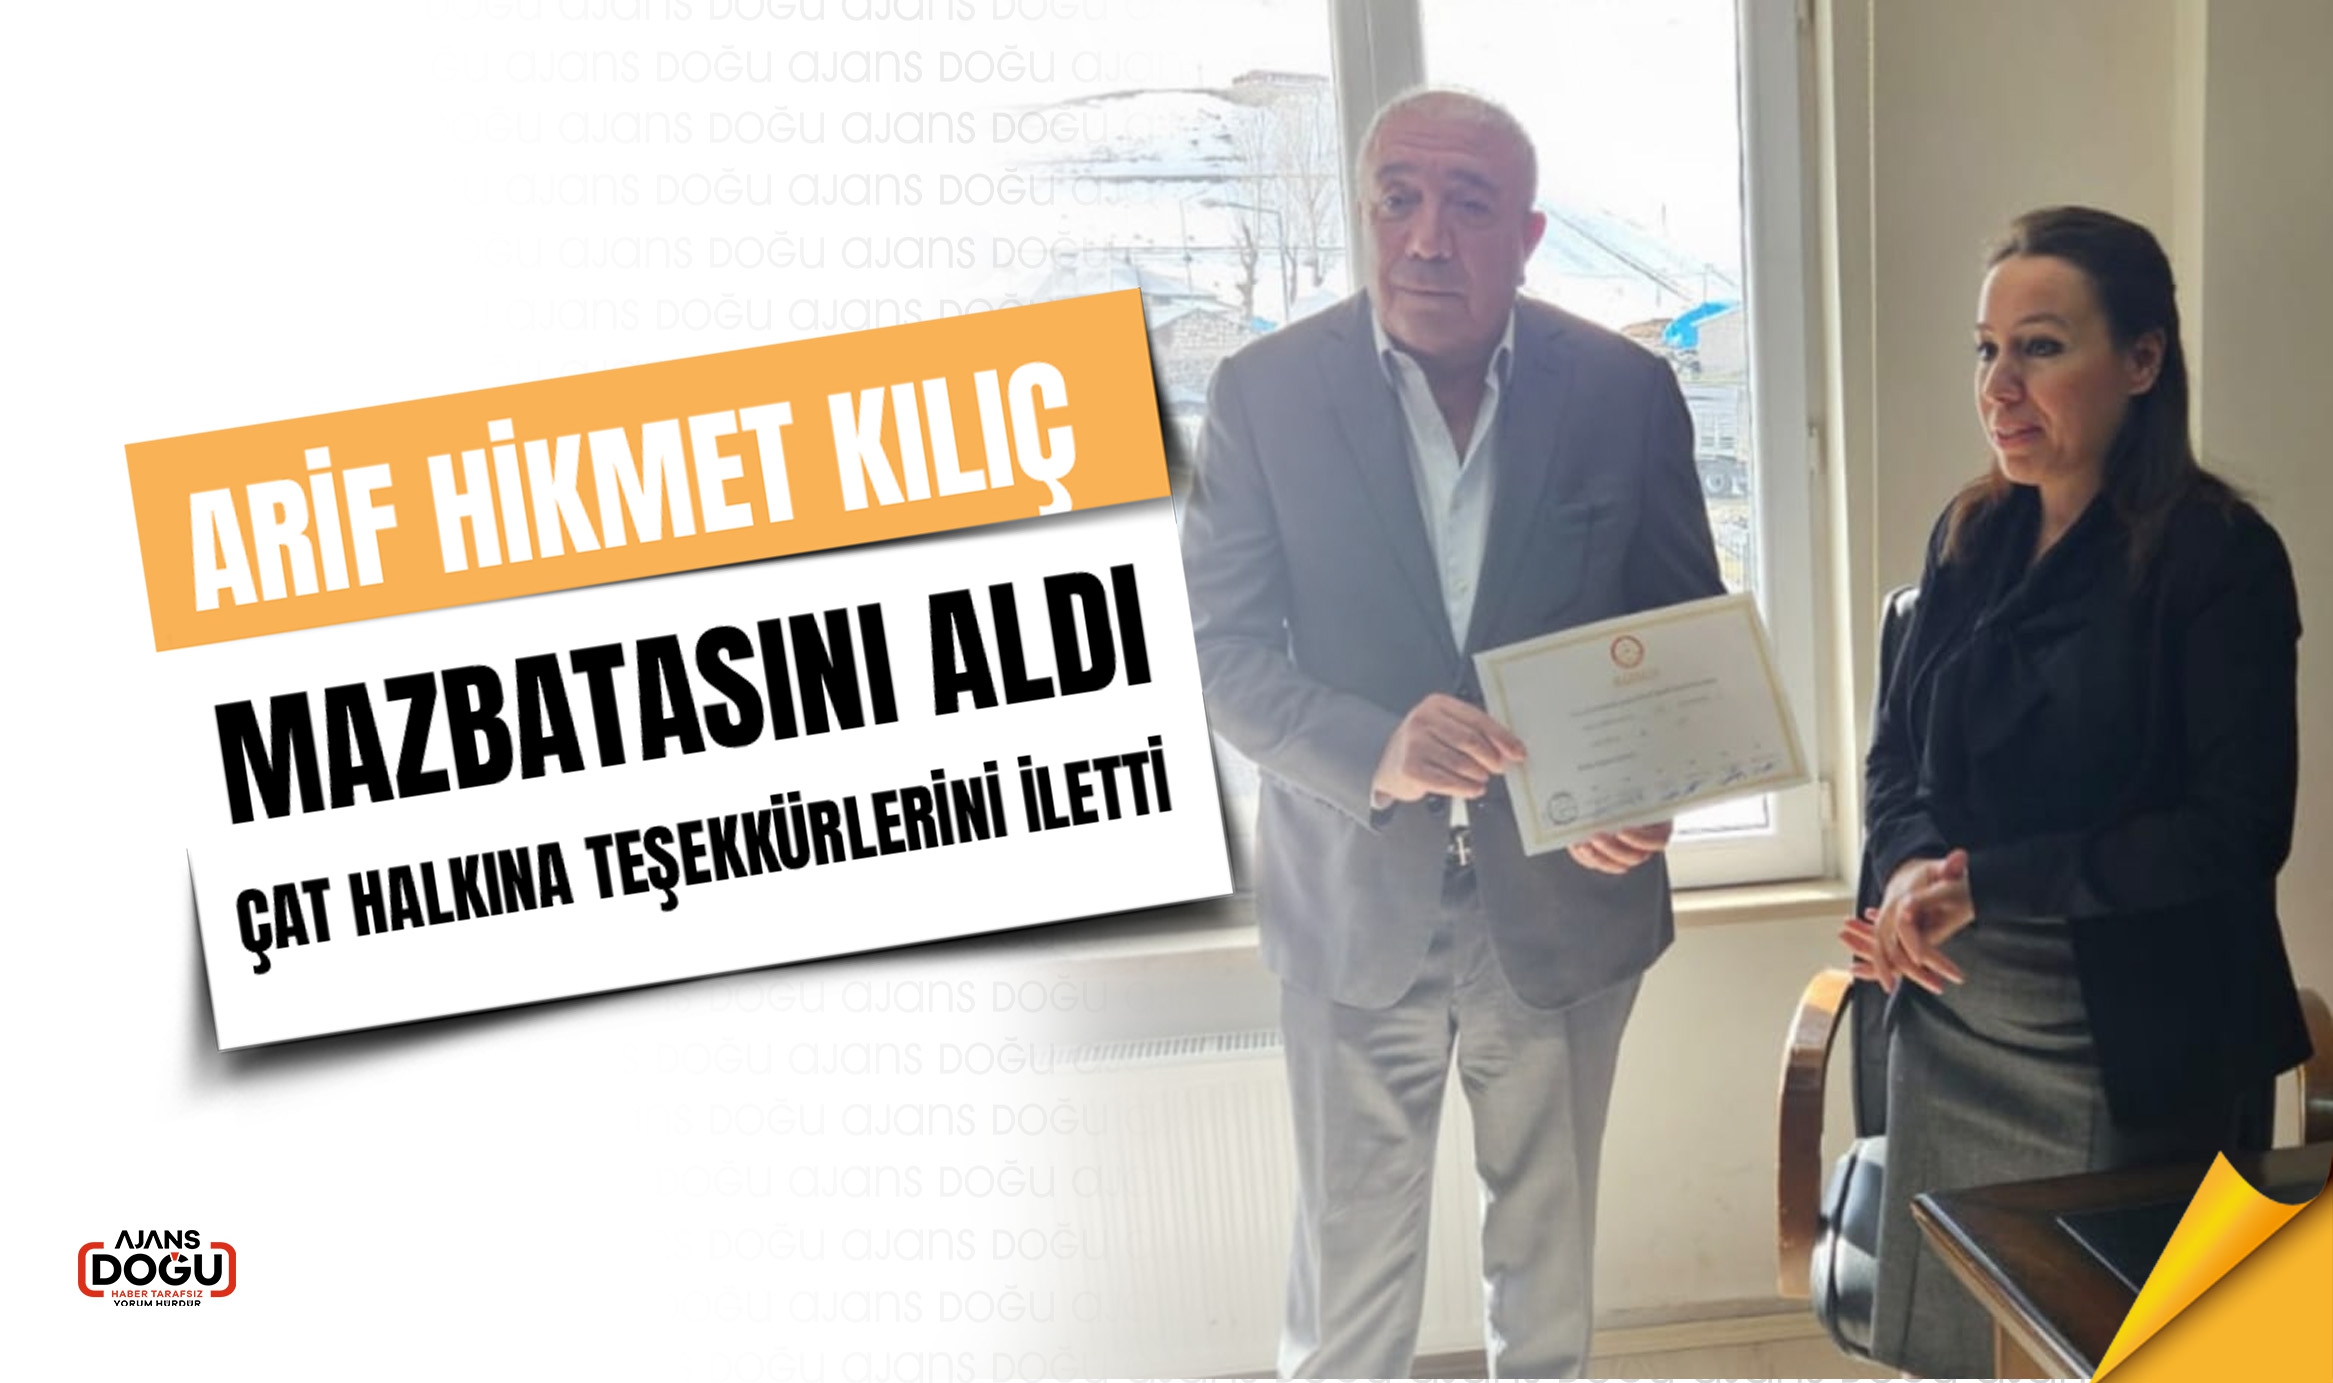 Çat Belediye Başkanı Seçilen Arif Hikmet Kılıç, Mazbatasını aldı ve Çat halkına teşekkür etti